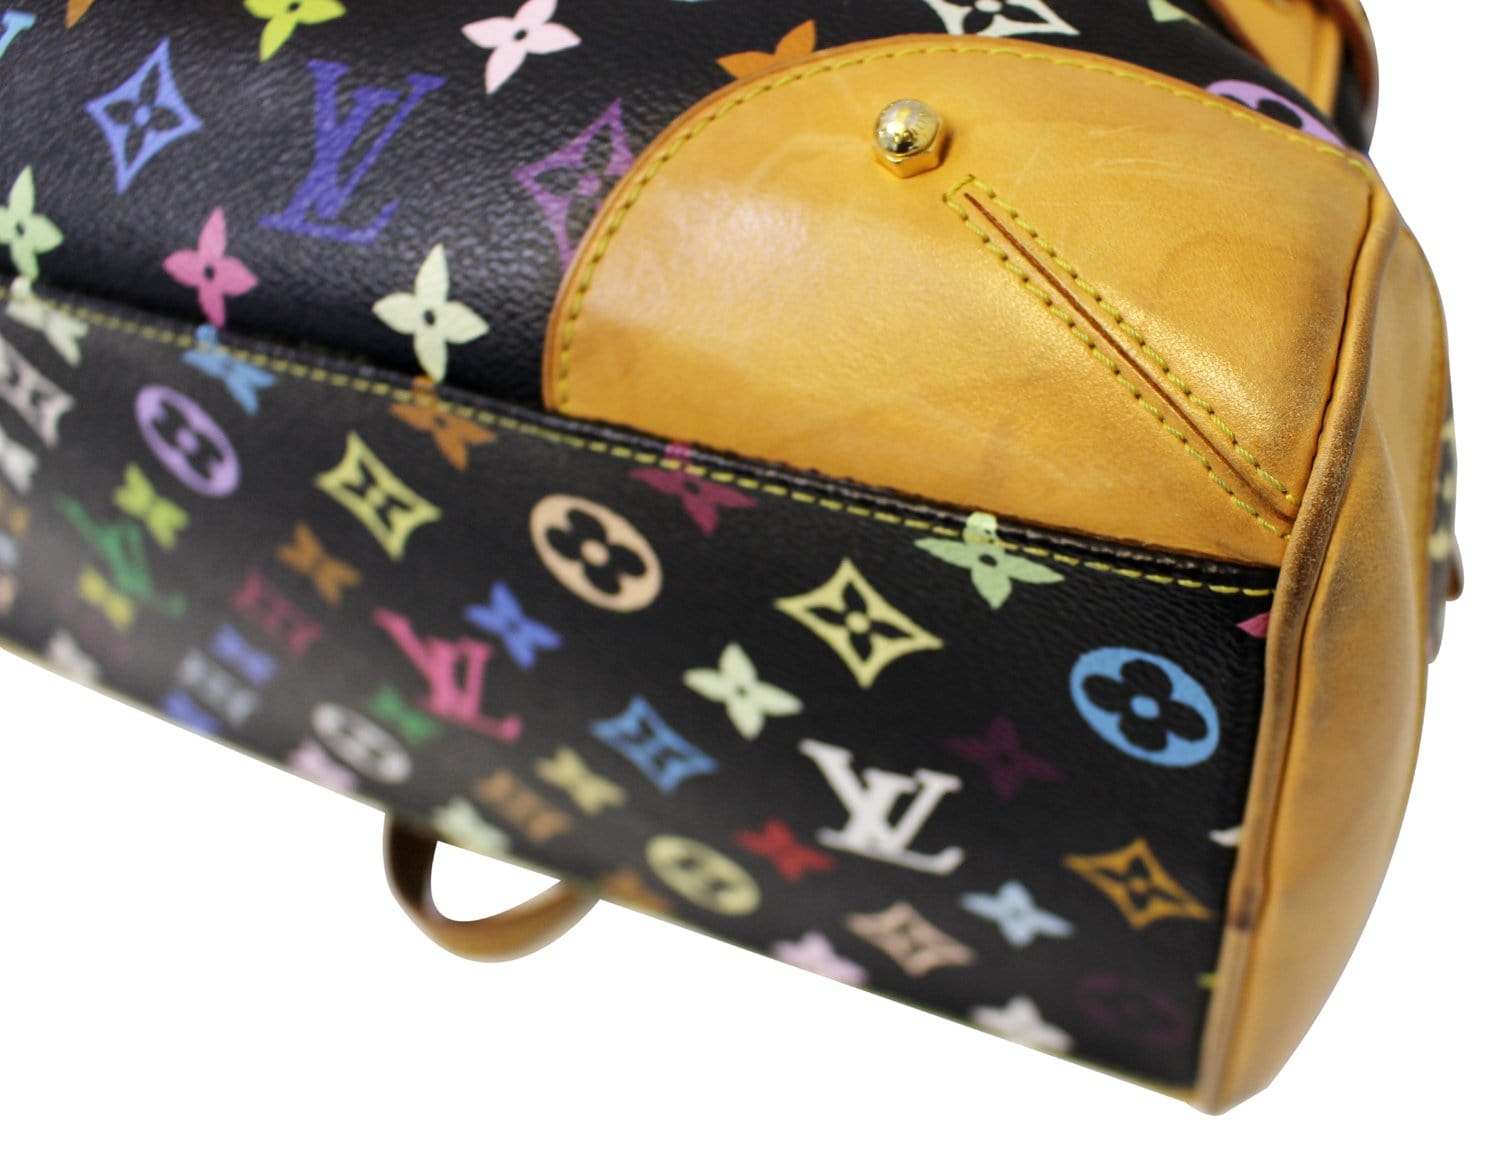 Louis Vuitton Limited Edition Monogram Multicolor Claudia Handbag